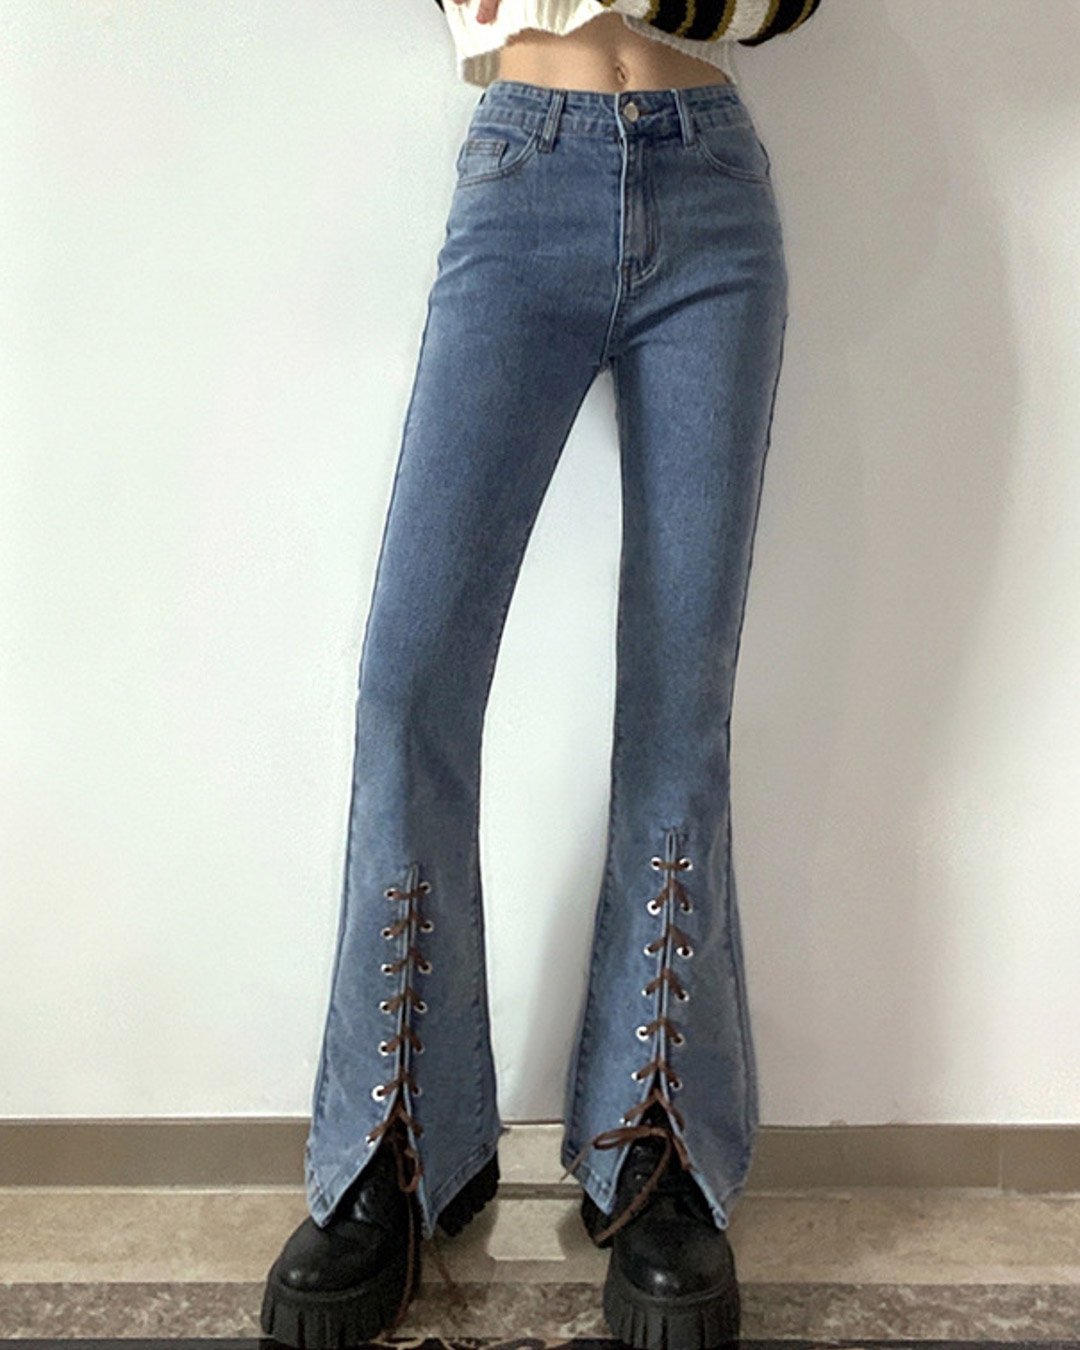 Fashionv-String Slit Stylish Stretch Flare Jeans